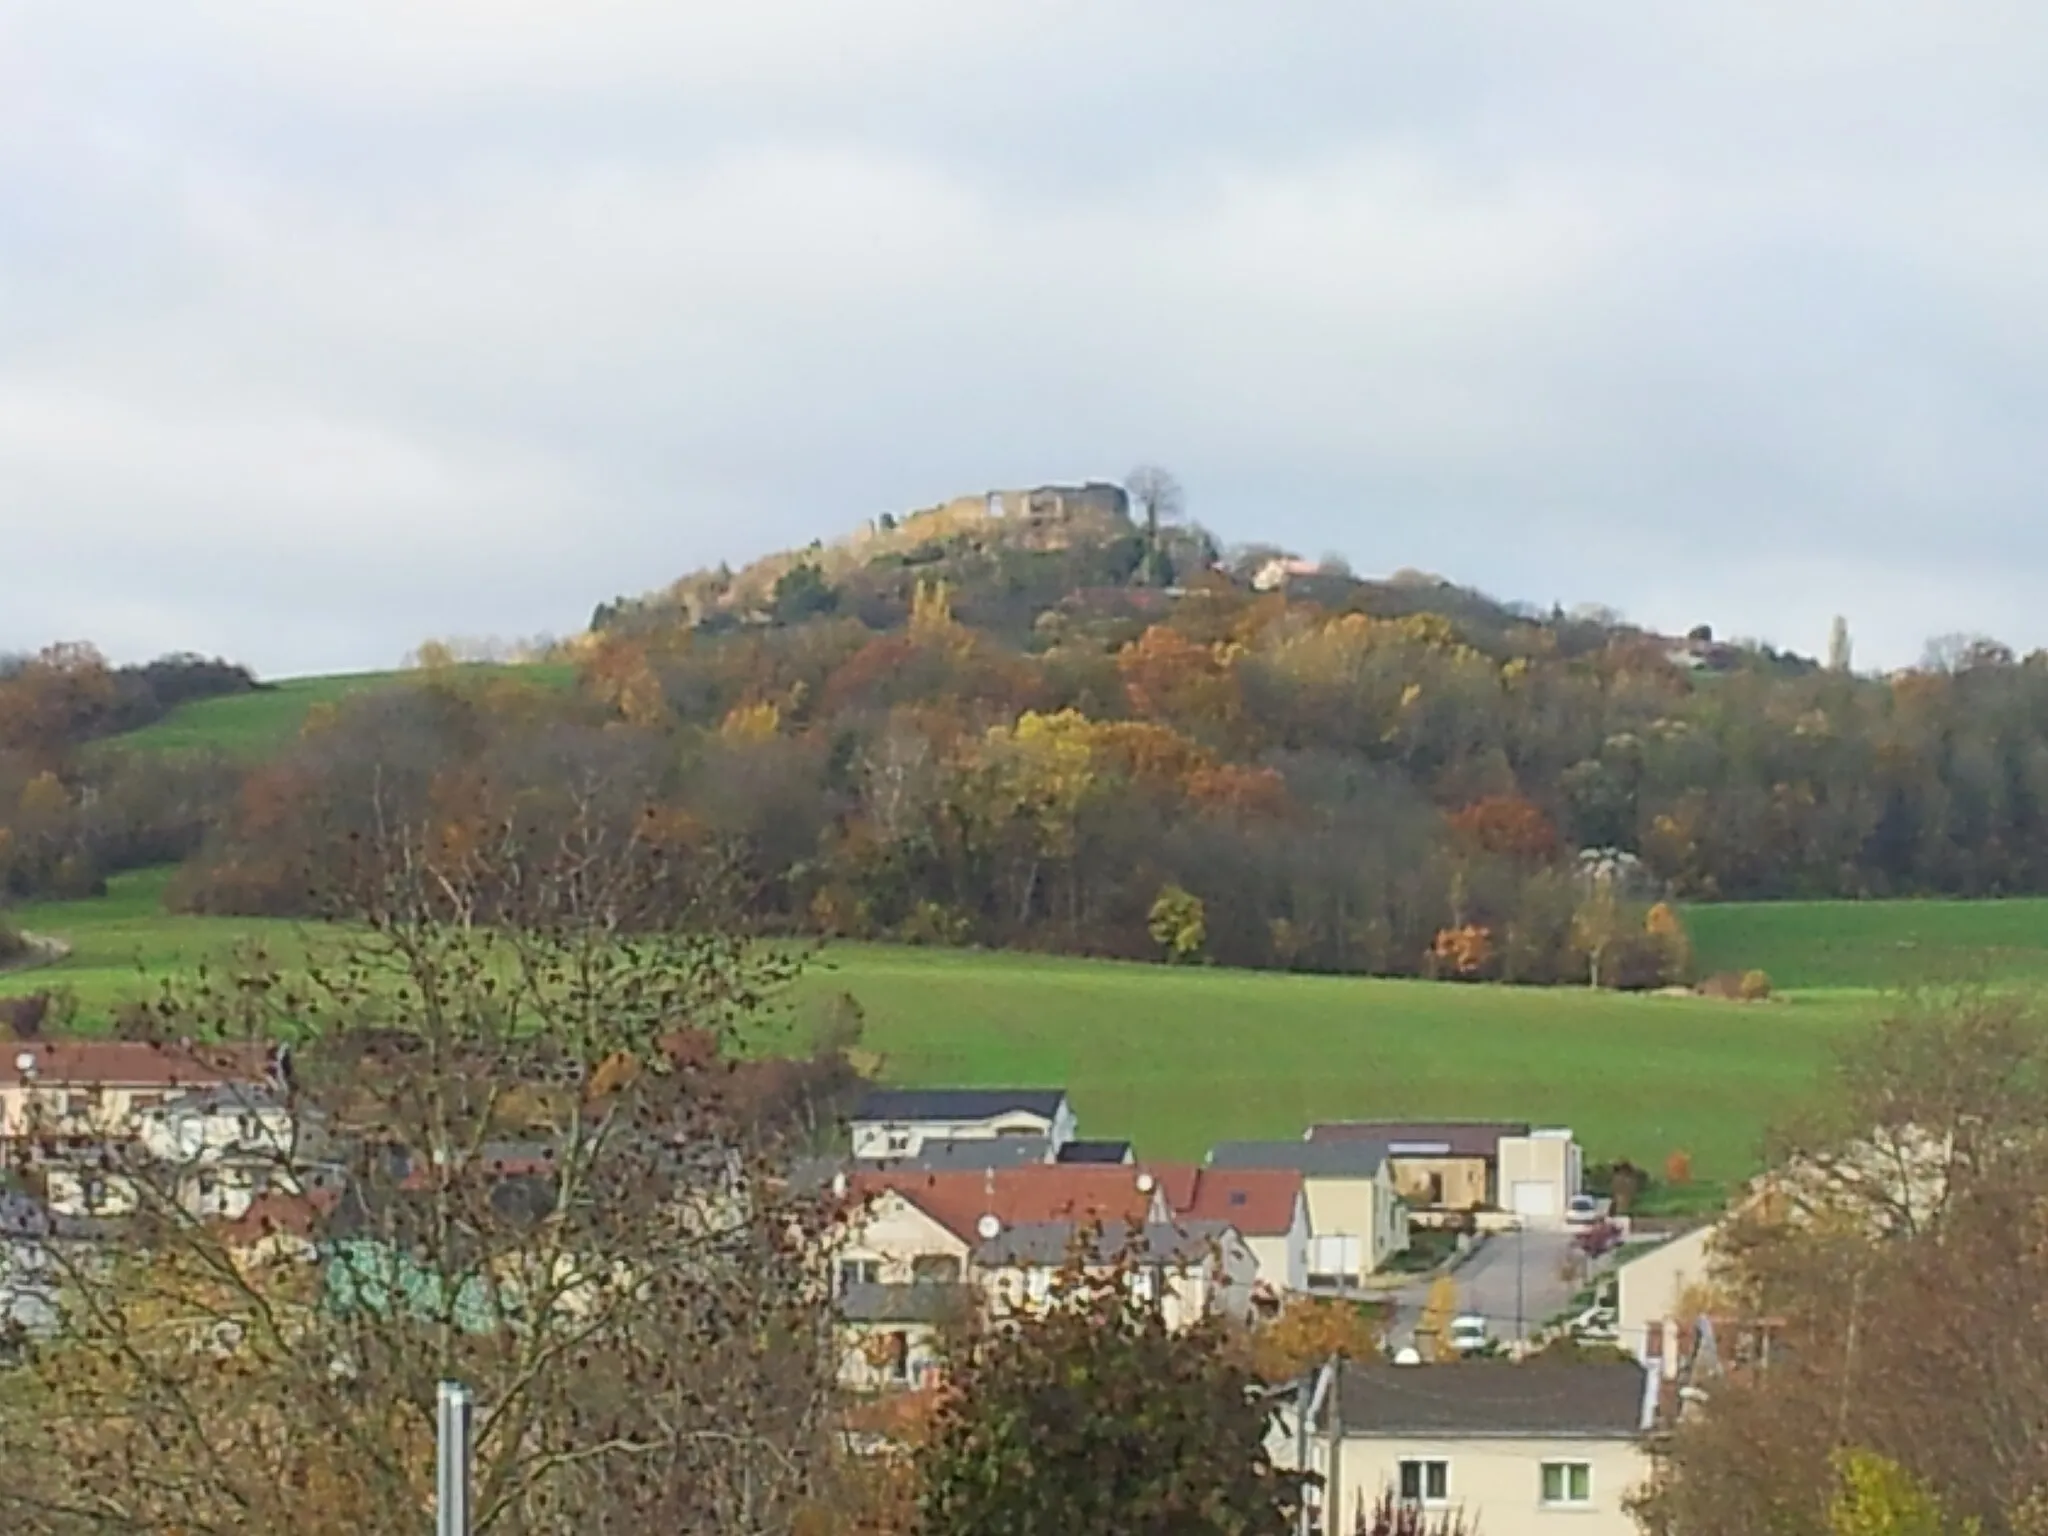 Photo showing: La colline de Mousson, butte-témoin des côtes de Moselle située principalement sur le territoire de la commune de Mousson dans le département de Meurthe-et-Moselle, vue depuis Atton.